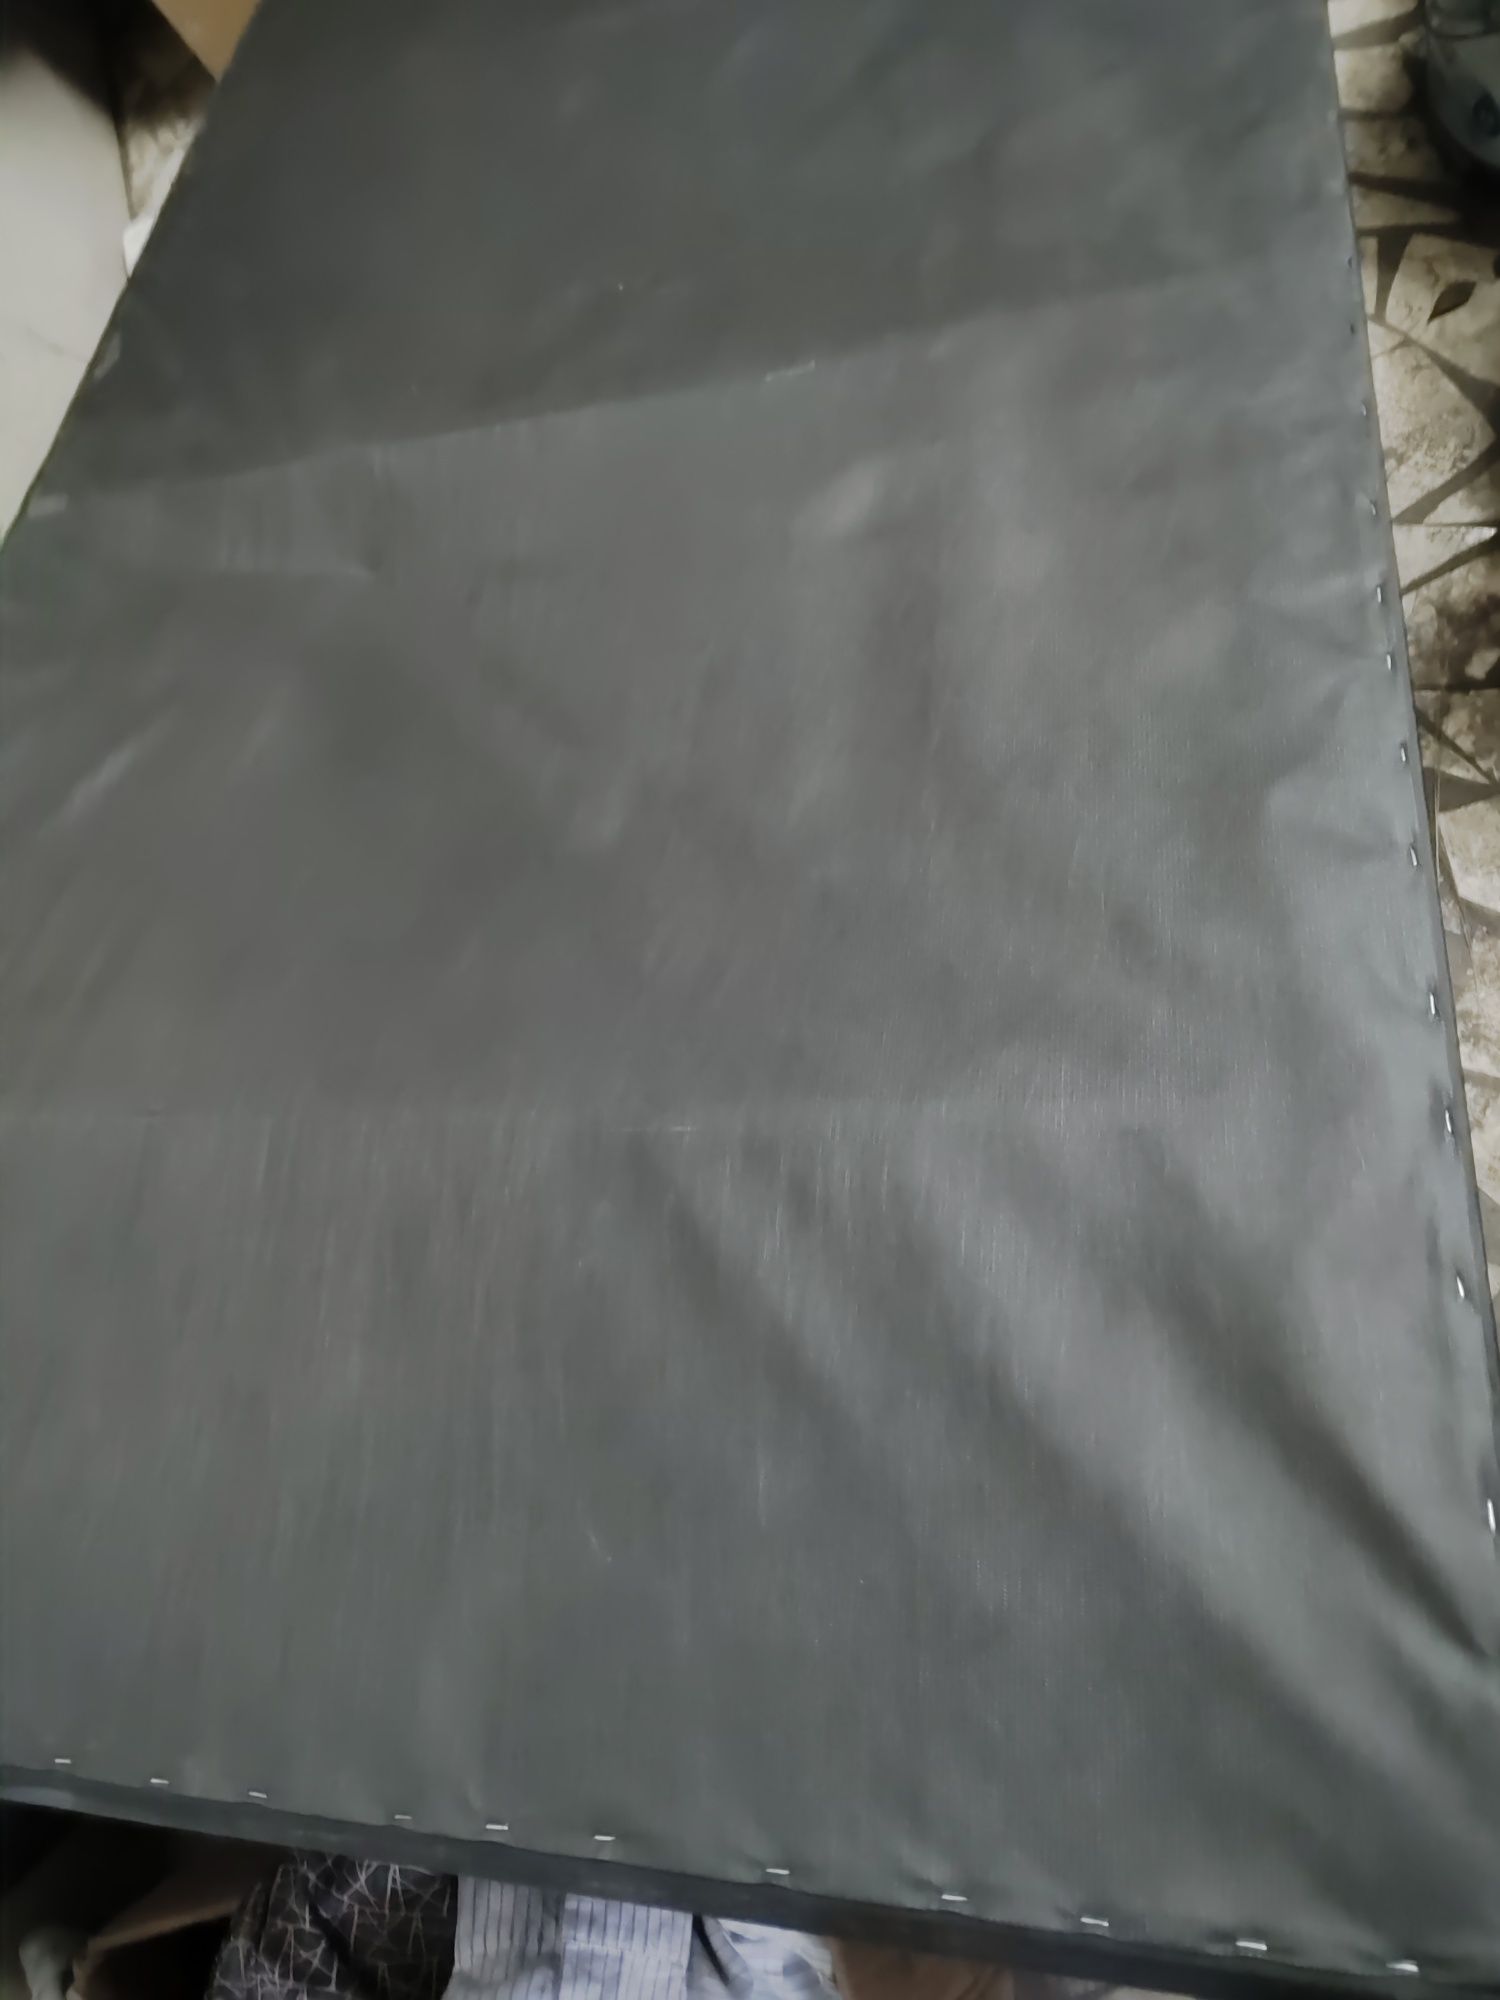 Матрас чёрный кожаный чехол, цена 6000,размер длина180*100" 24см